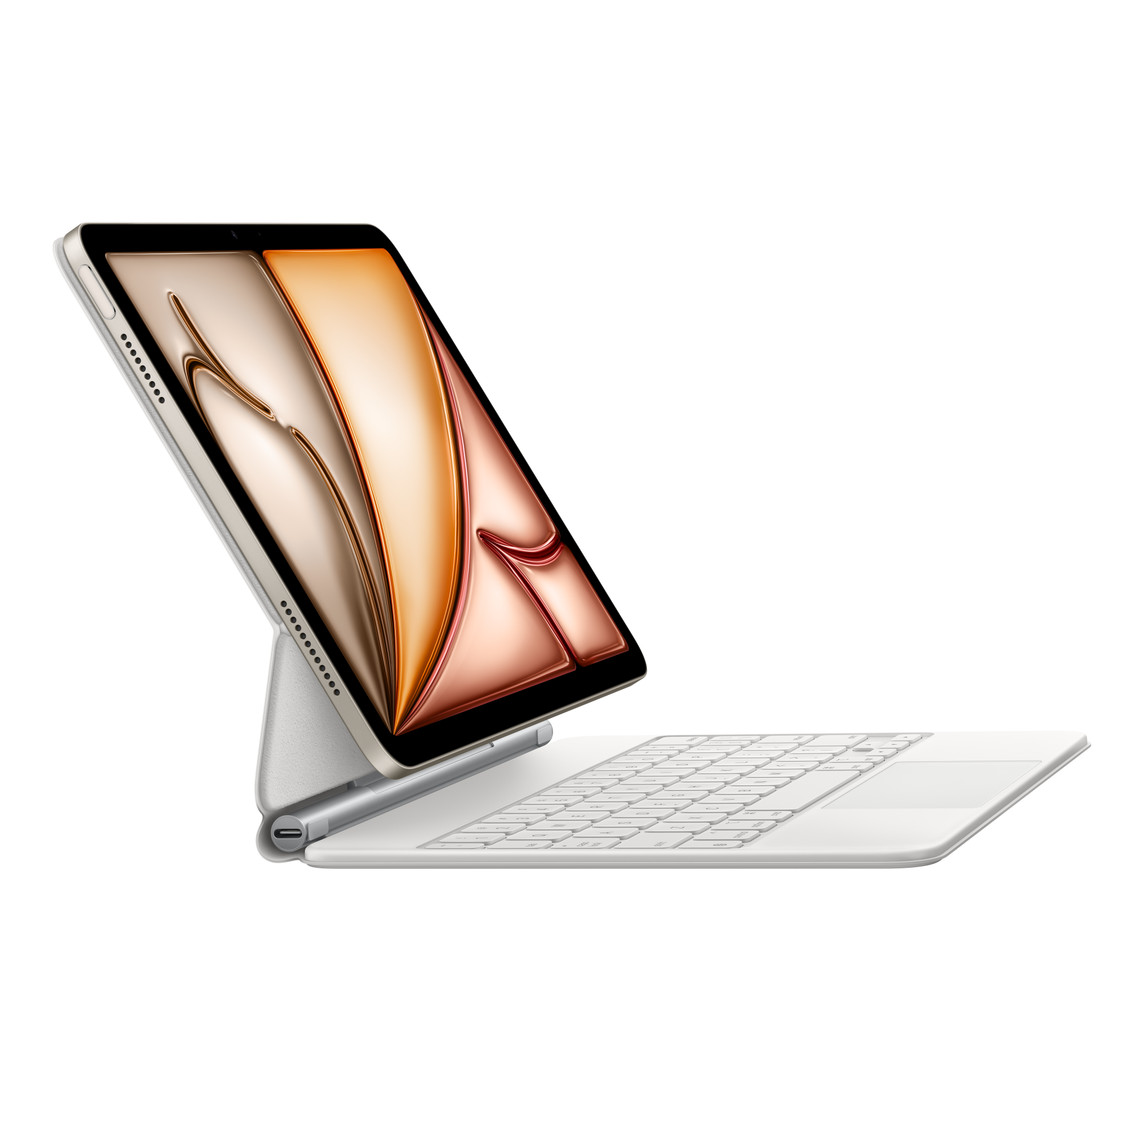 适用于 11 英寸 iPad Pro (第三代) 和 iPad Air (第五代) 的白色妙控键盘安装在 iPad 上。